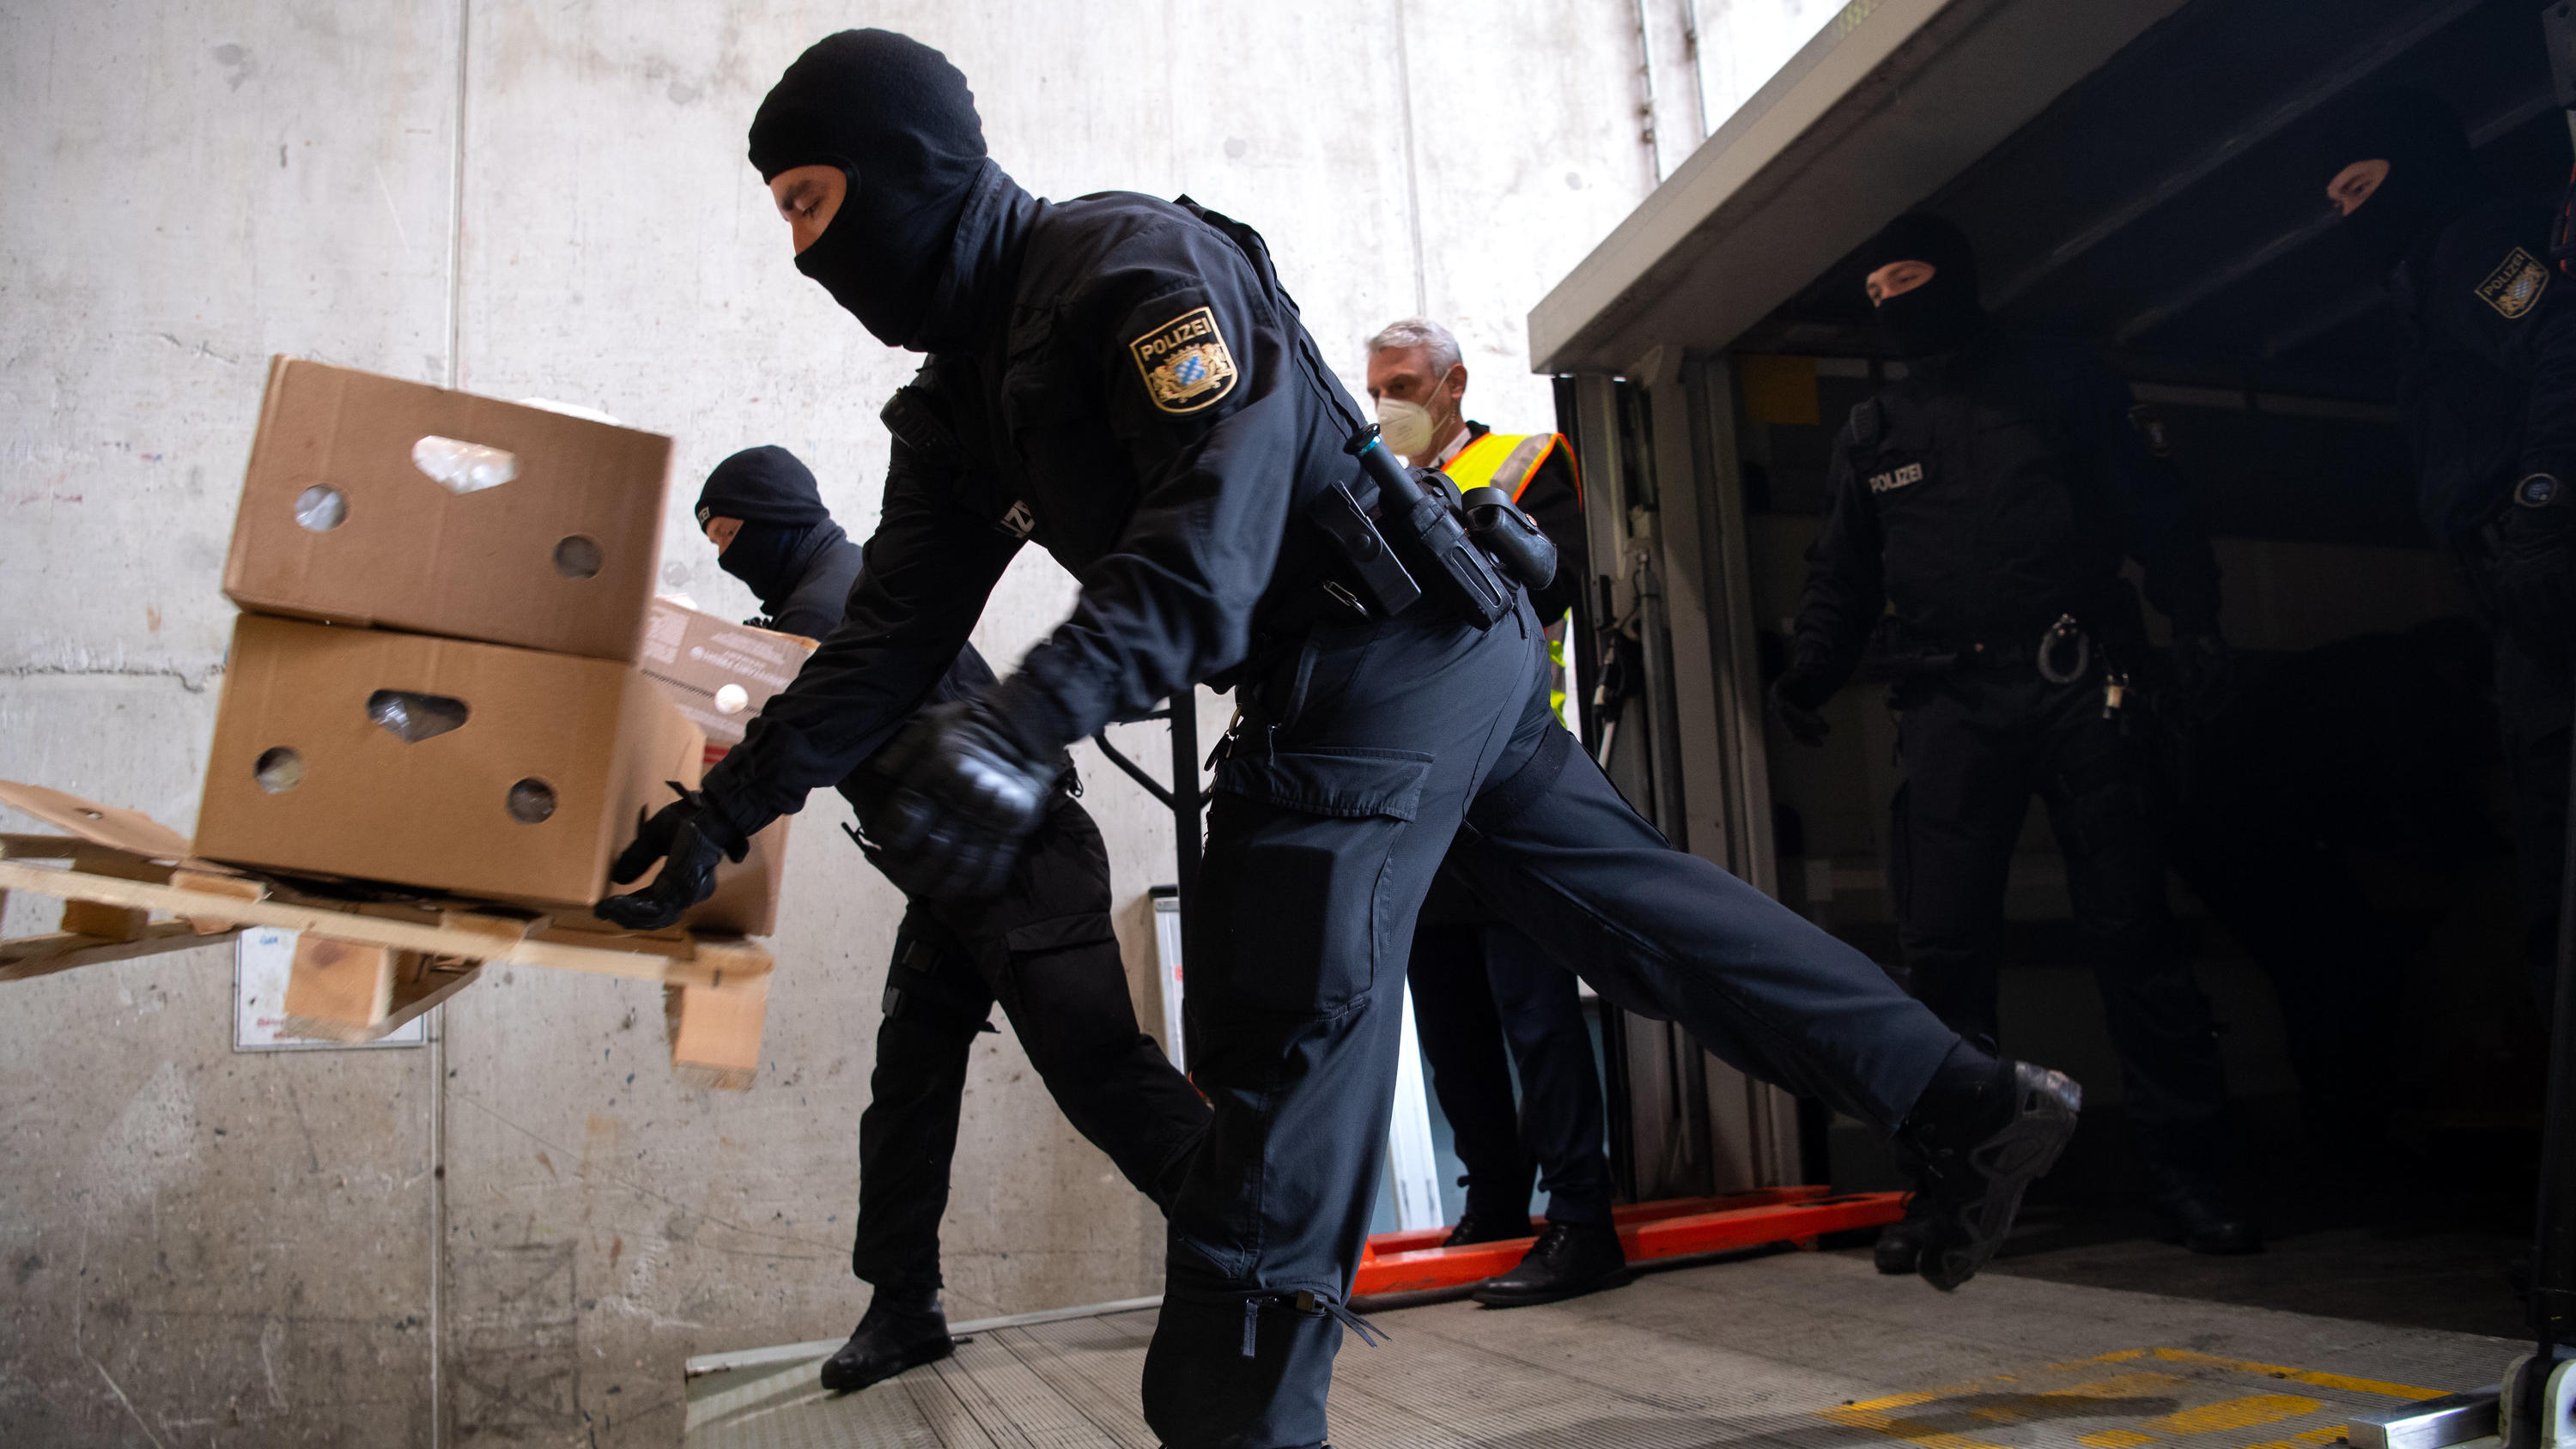 14.12.2021, Bayern, ---: Polizisten werfen Kisten mit Kokain in den Schacht von einer Müllverbrennungsanlage. Im Rahmen der Operation «Schneeschmelze» hat die bayerische Polizei unter strengsten Sicherheitsvorkehrungen das Kokain an einem geheimen Or